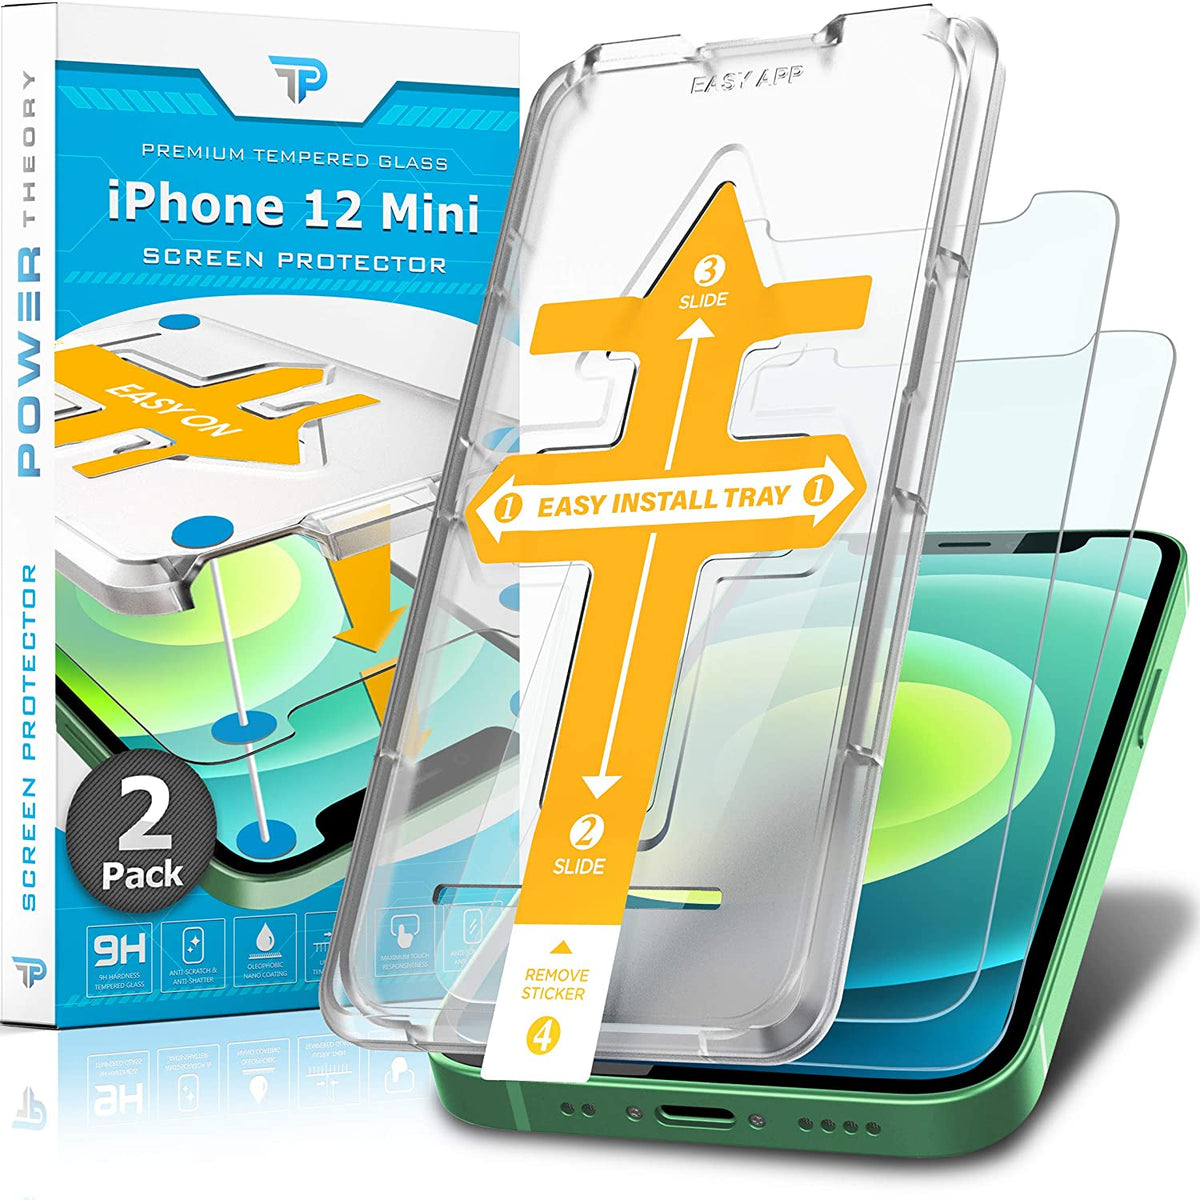 Power Theory Schutzfolie kompatibel mit iPhone 12 Mini [2 Stück] - mit Schablone, Folie, Displayschutzfolie, Schutzglas Cover